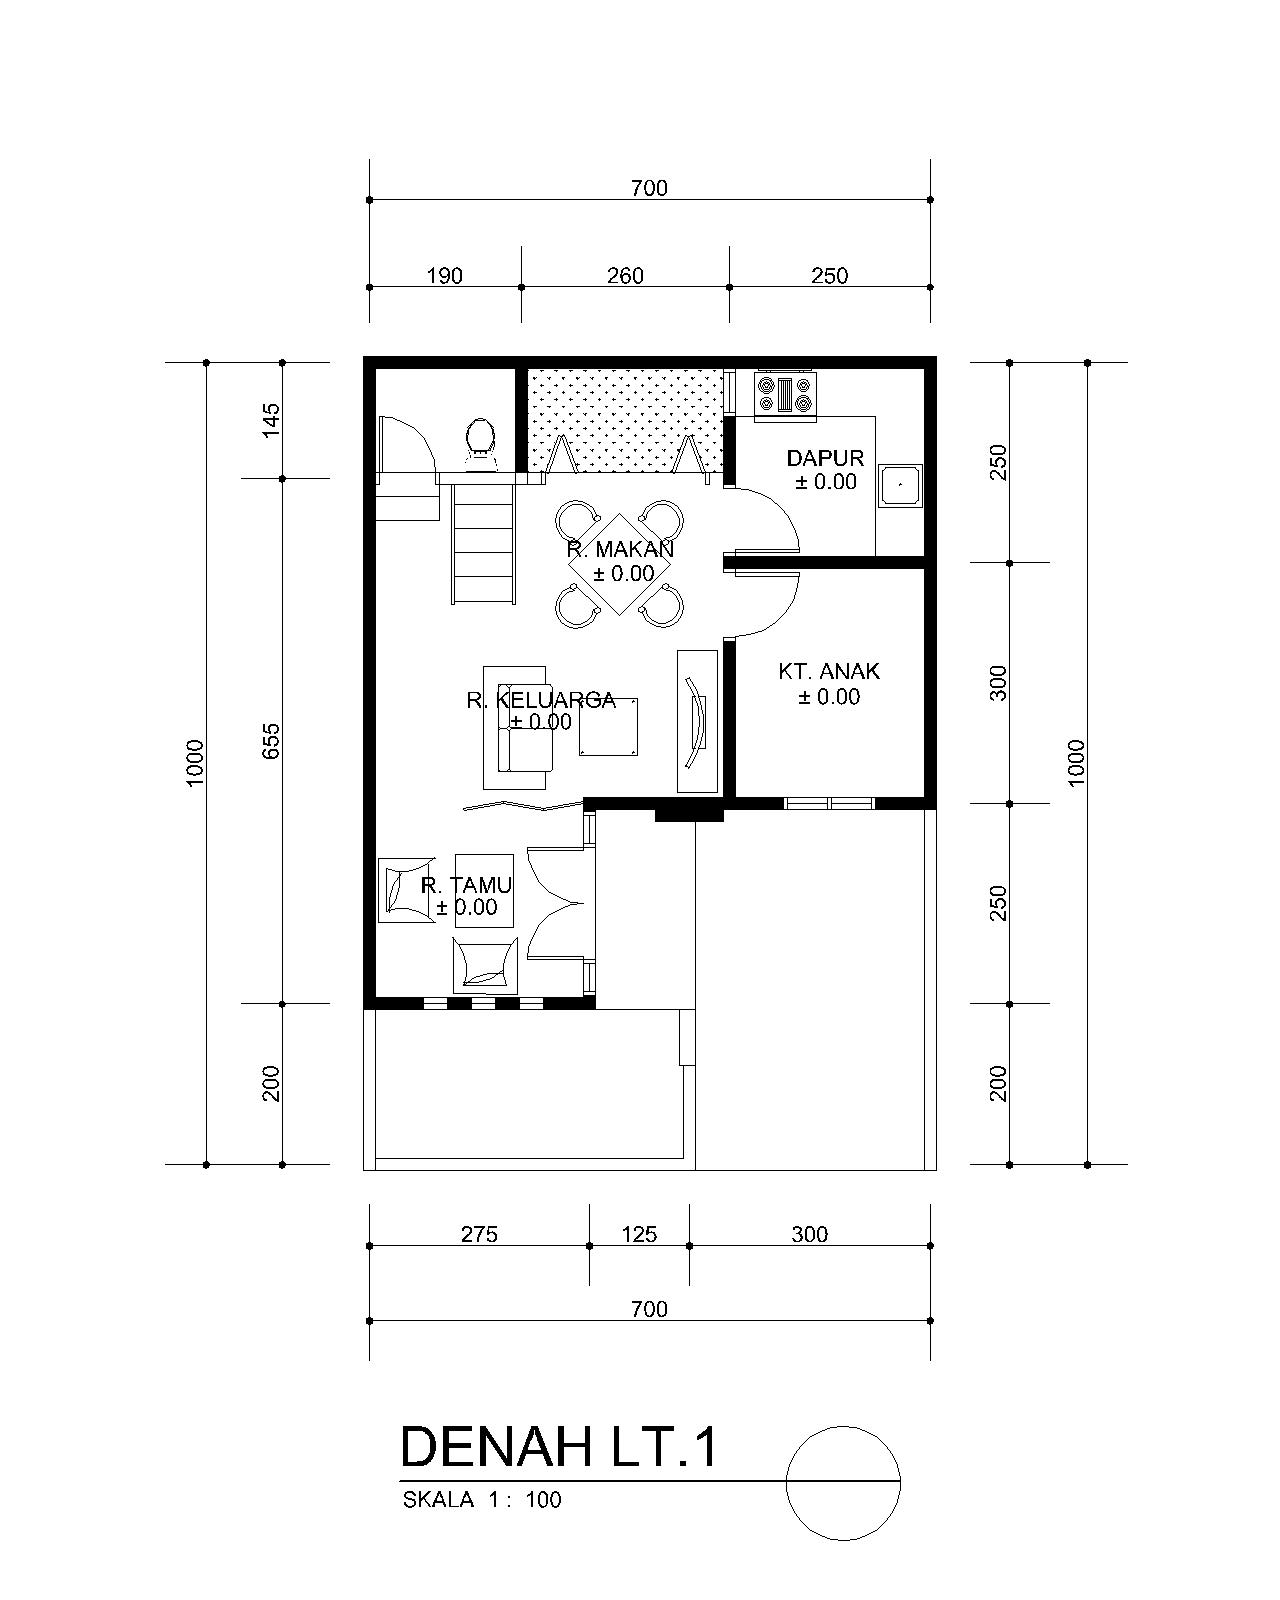 Planning of buildings: DESAIN RUMAH MINIMALIS MUNGIL (7 X 